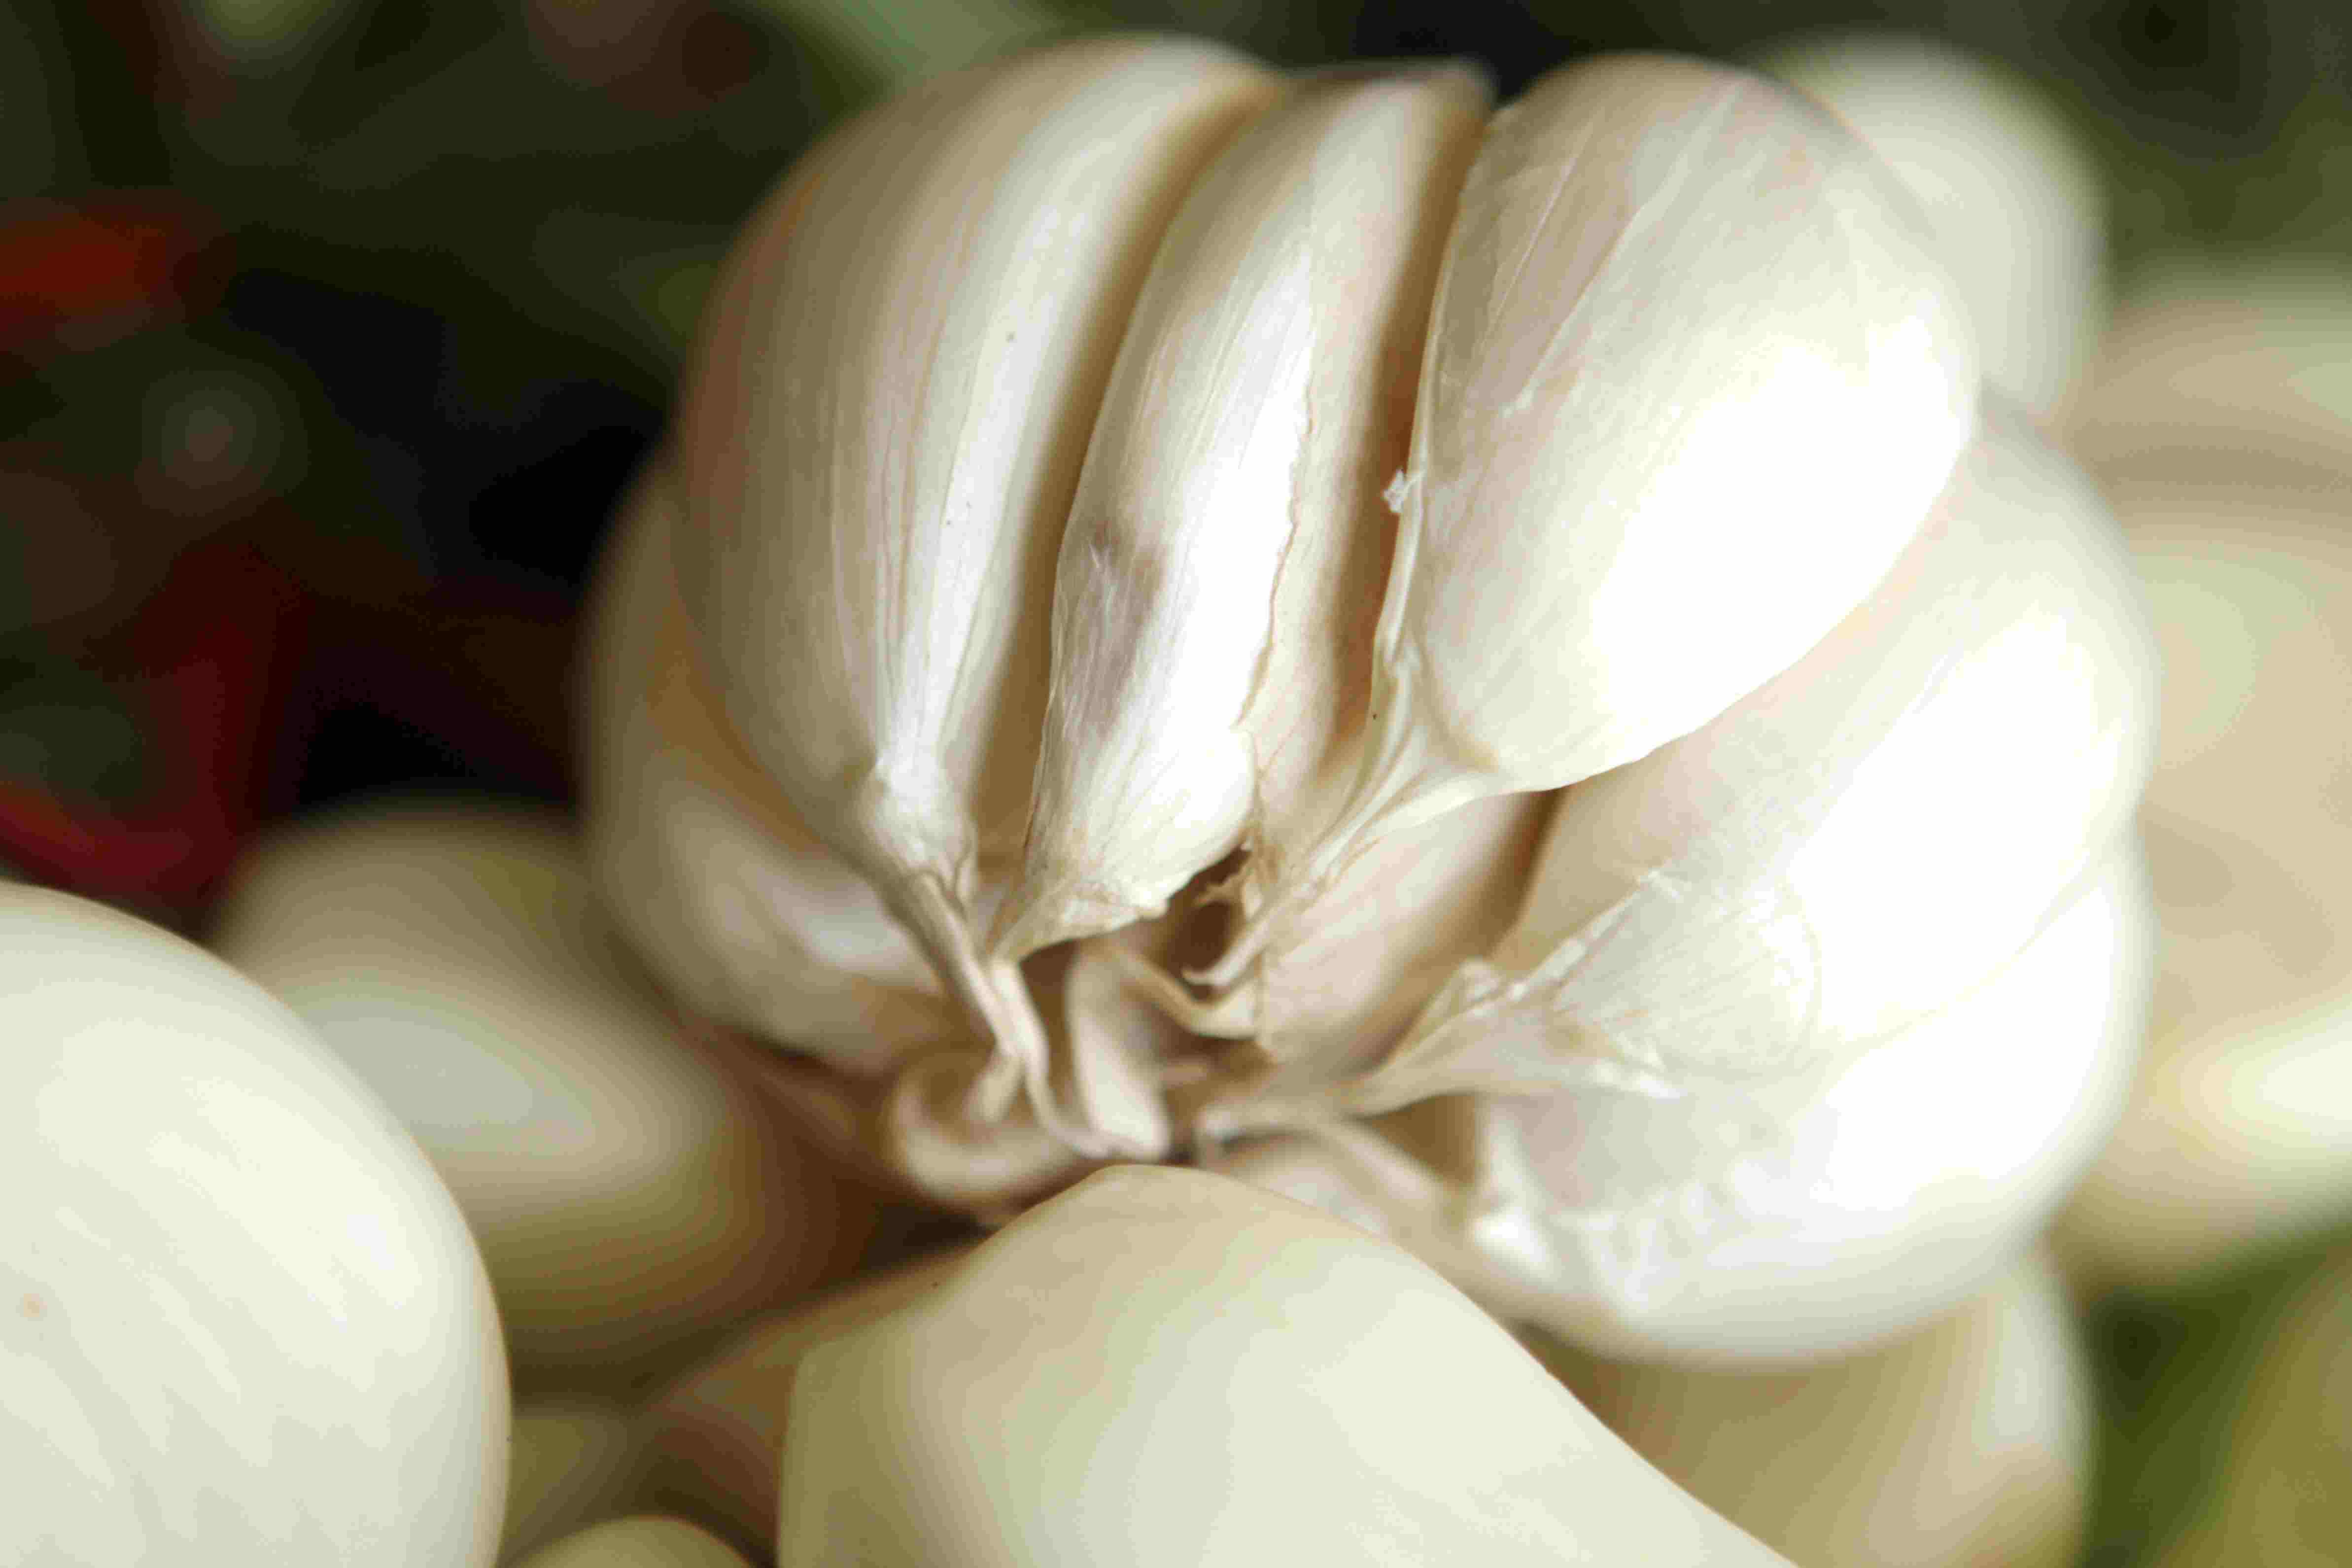 Description of: Garlic